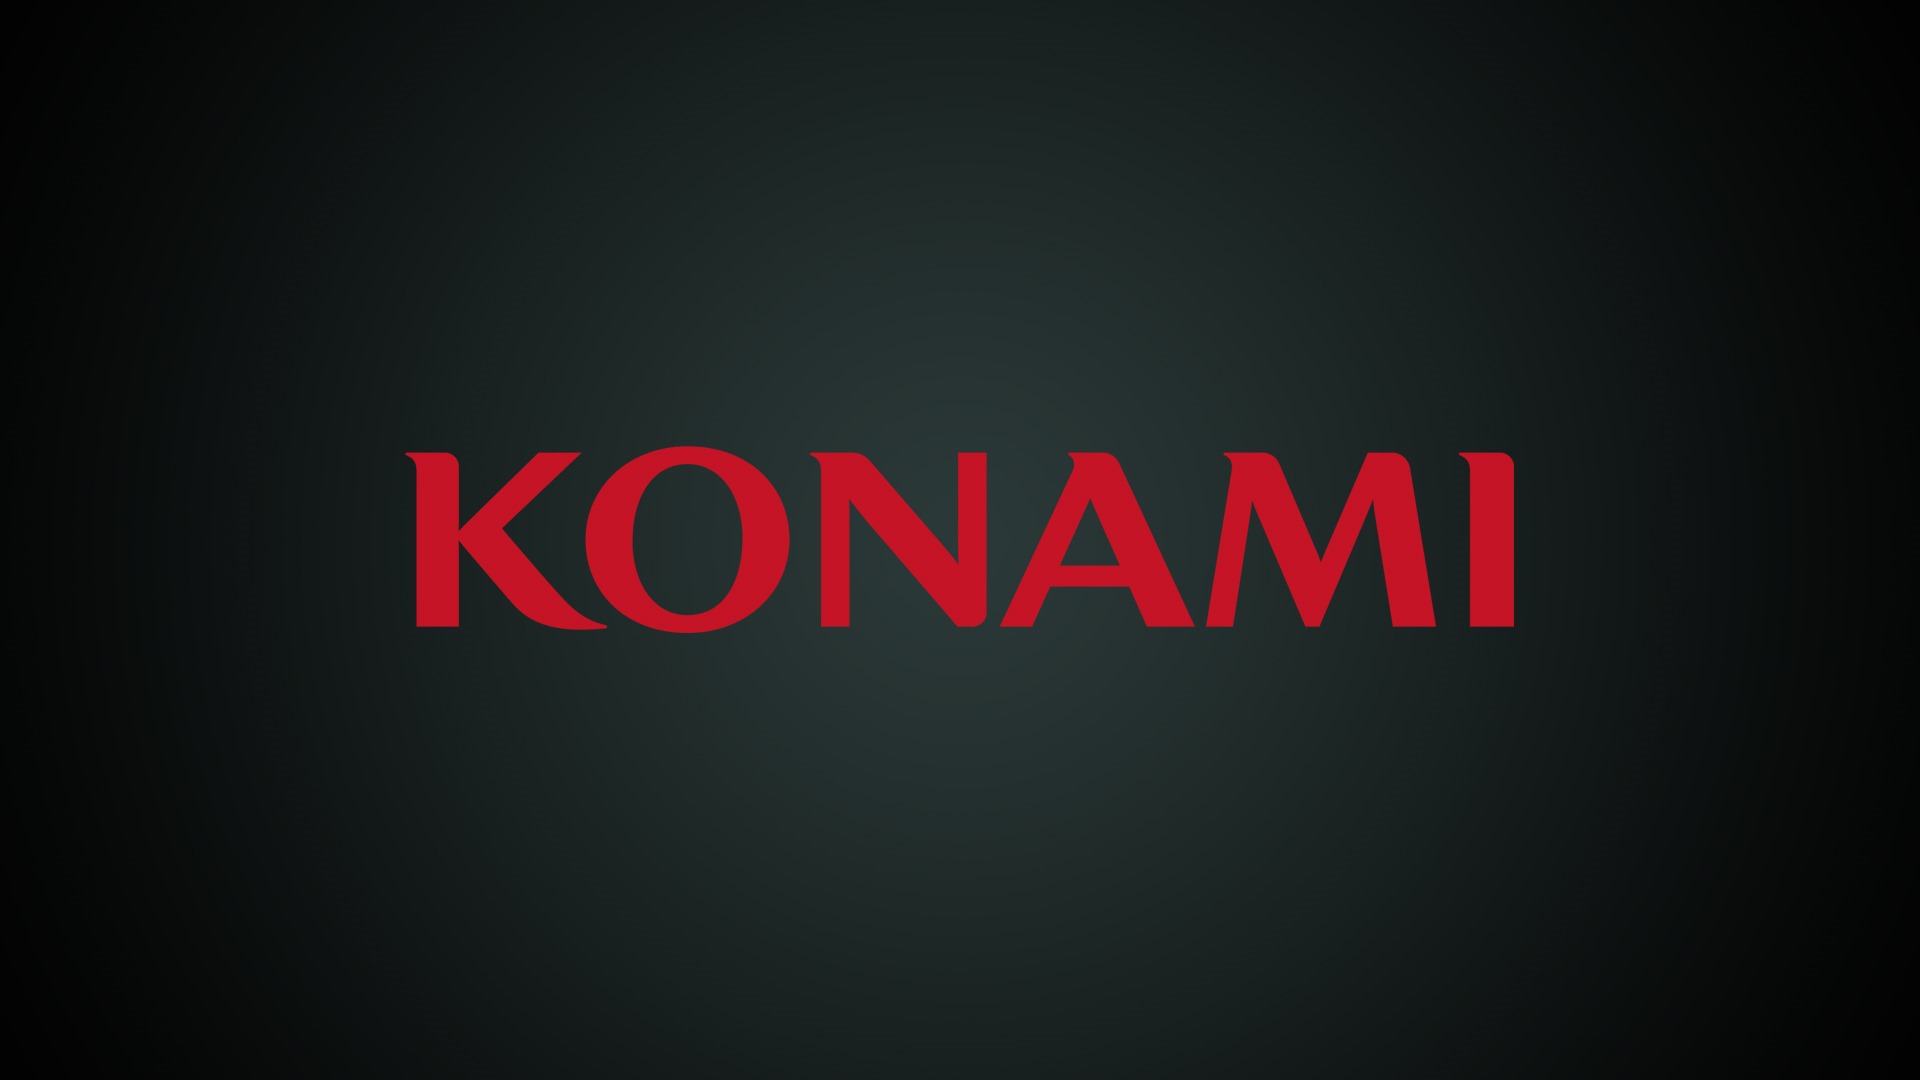 نتایج گزارش مالی Konami اعلام شد؛ ثبت سود ۷۰درصدی نسبت به سال گذشته